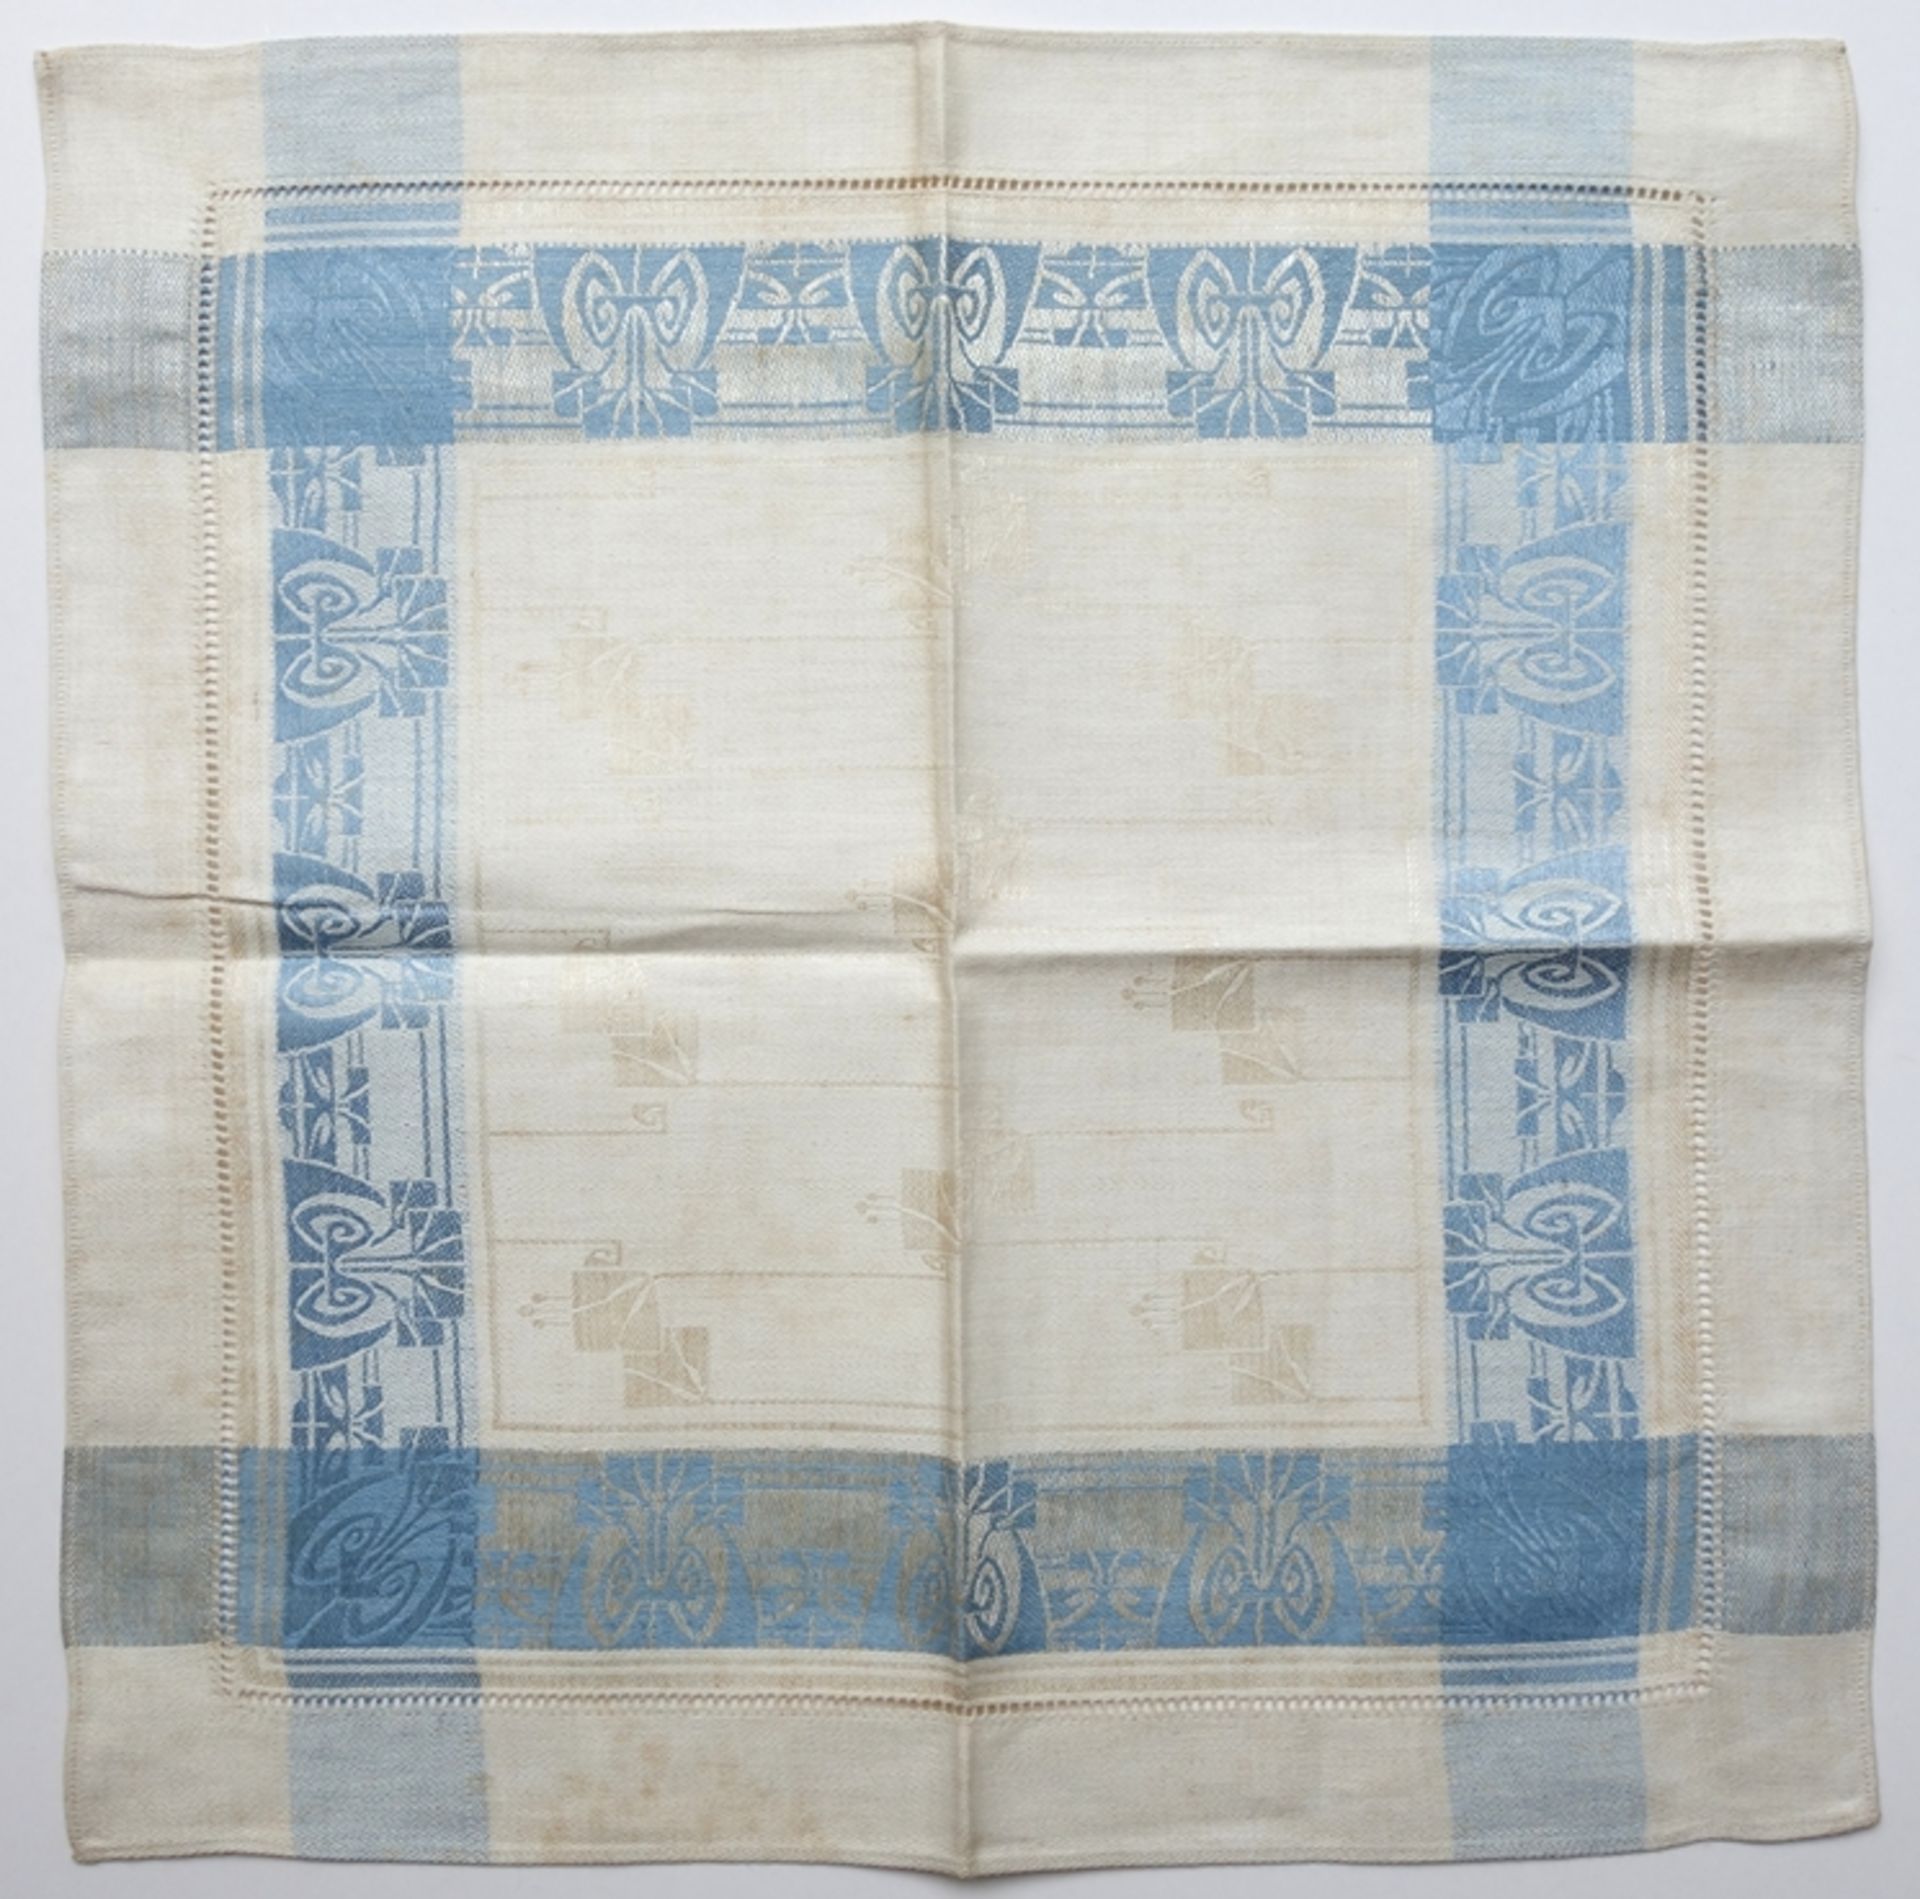 Decke mit 6 Servietten, eingewebtes, hellblaues Muster im Stil von Peter Behrens, Jugendstil, um - Bild 2 aus 2